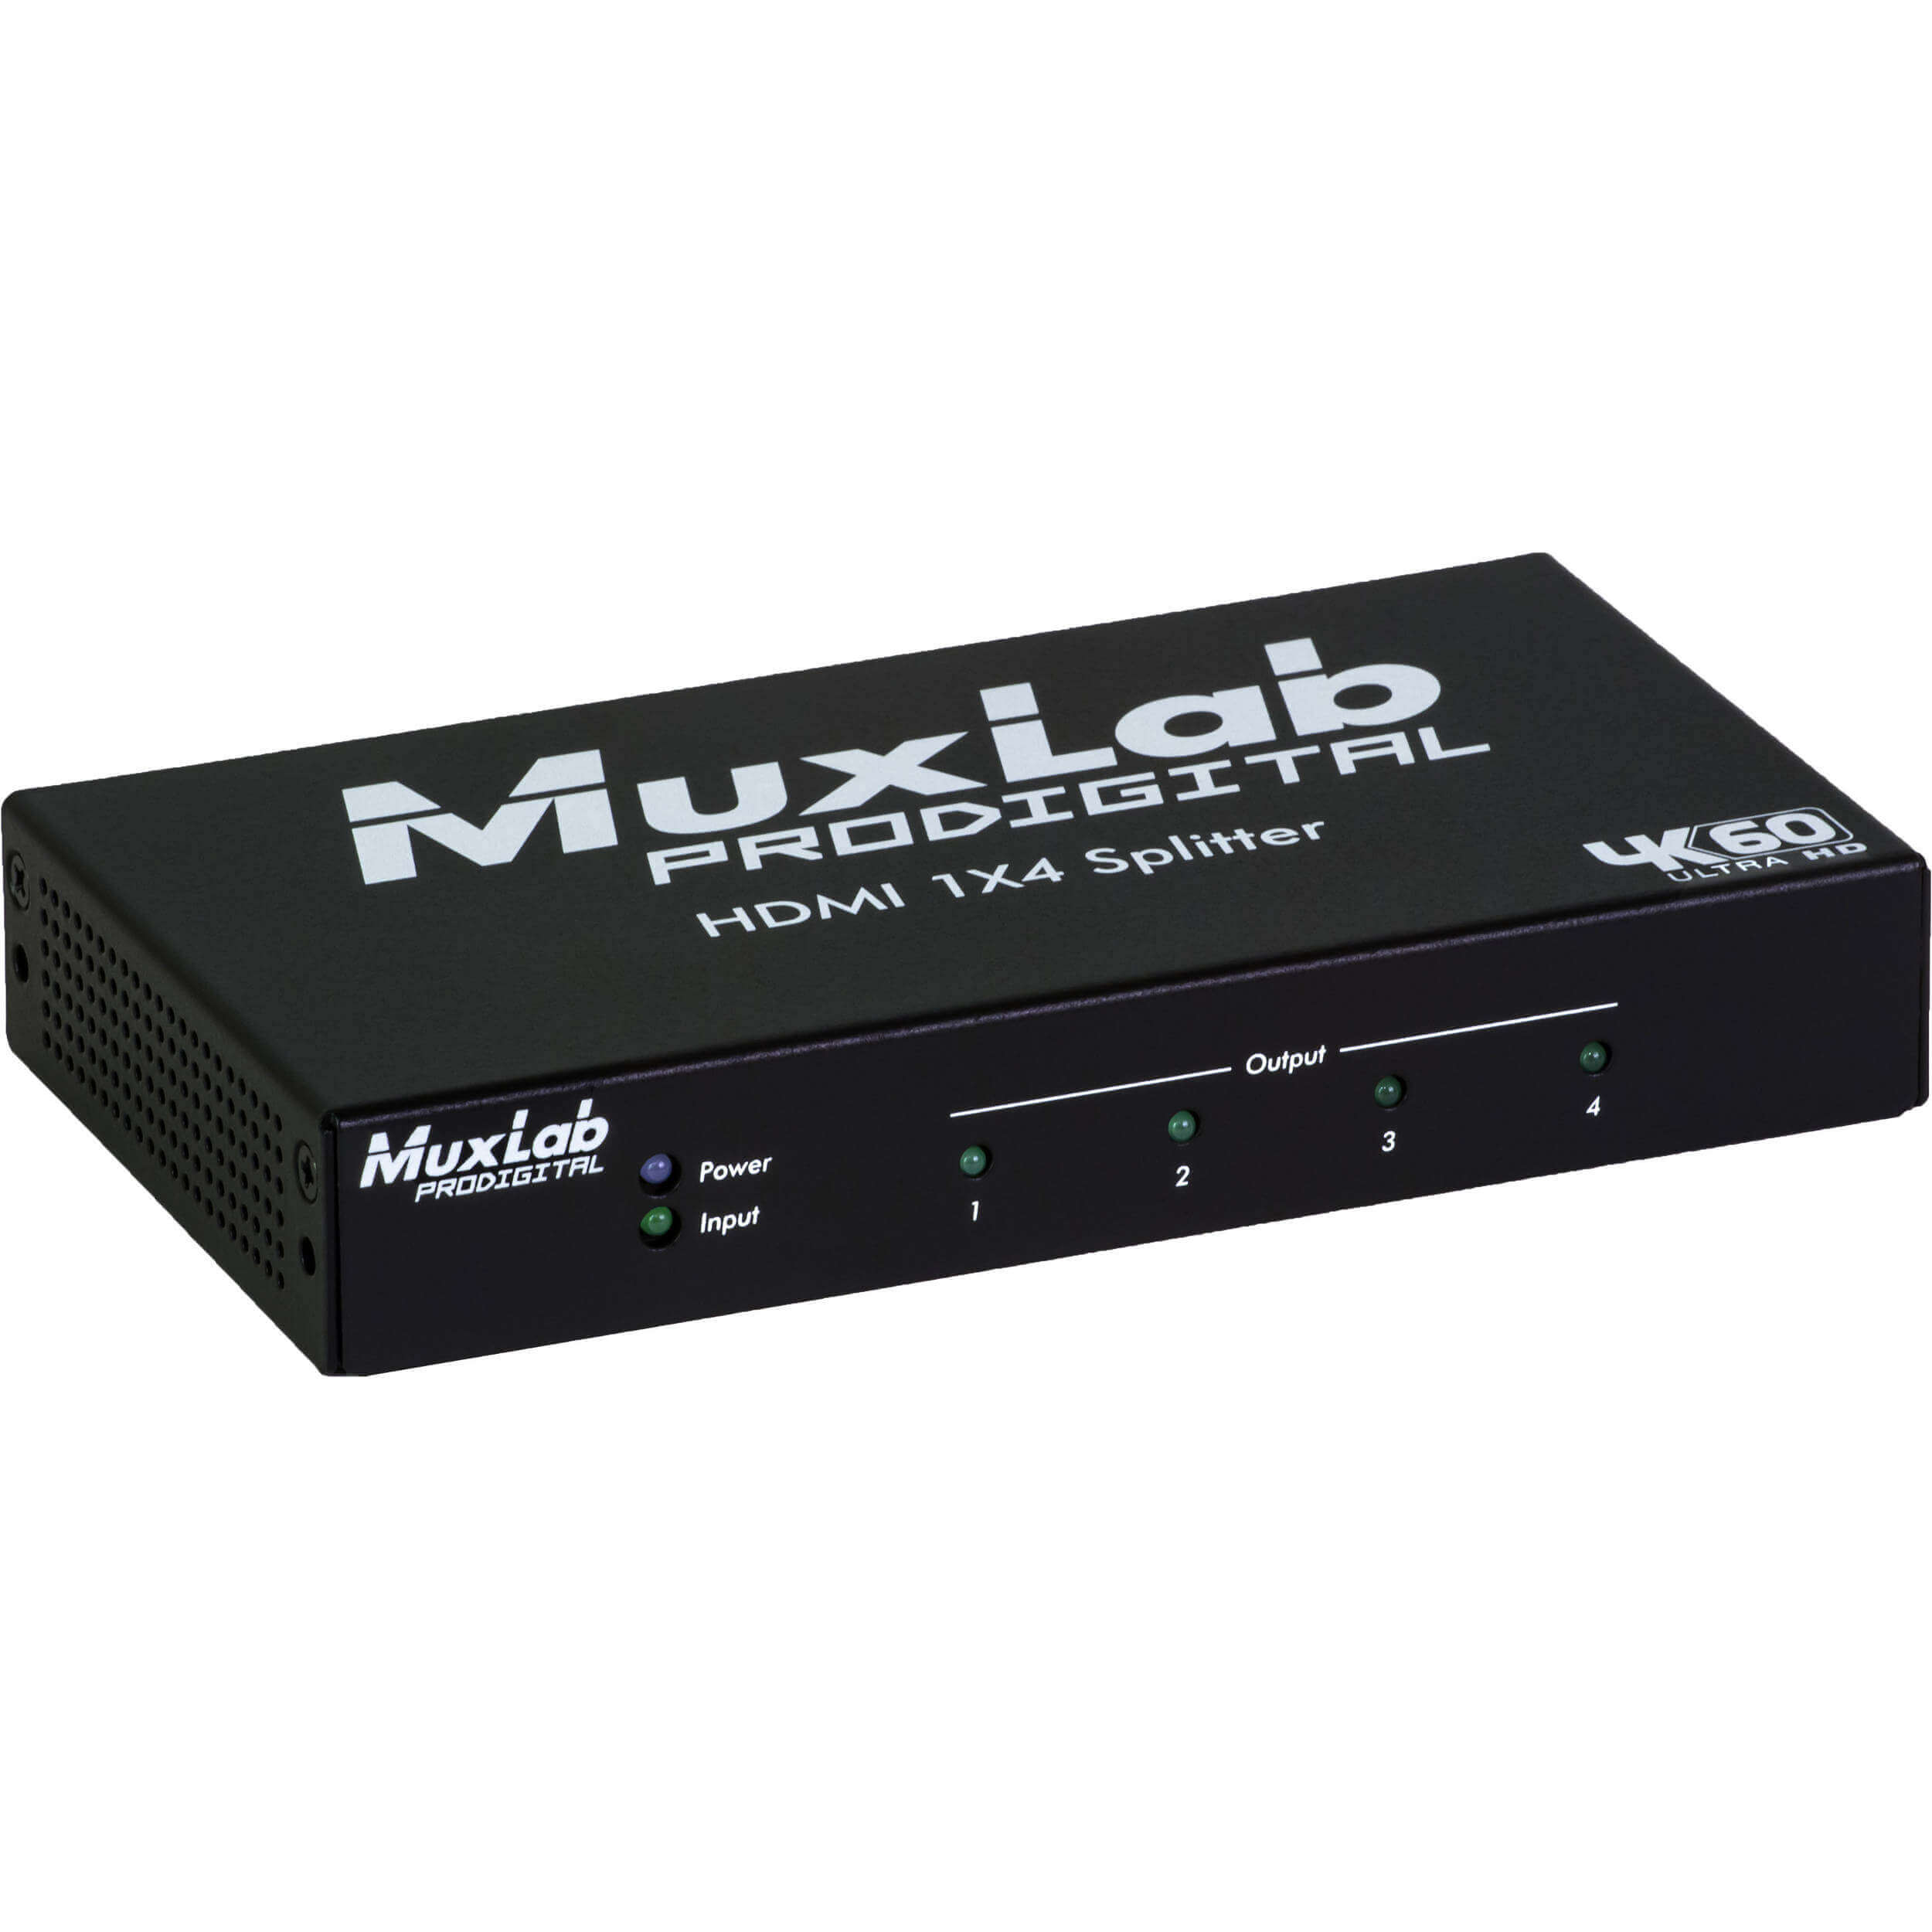 MuxLab 500426 Divisor 4k60 hdmi 1x4, compatible con hdcp 1.4 y 2.2